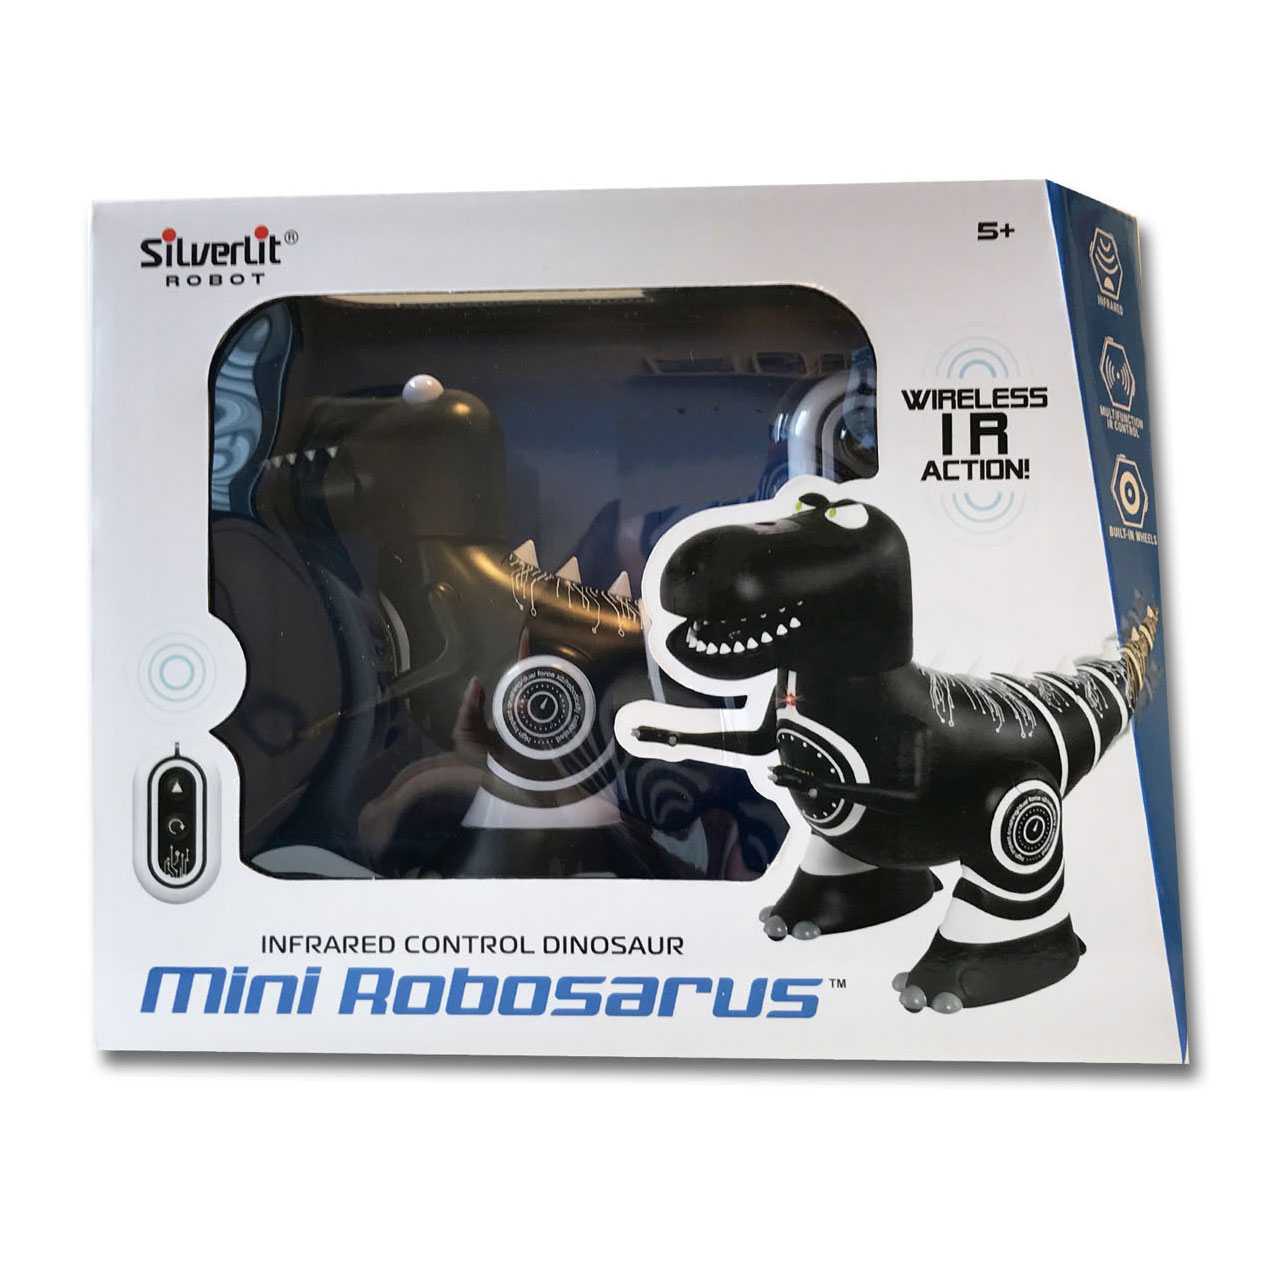 Mini Robosaurus